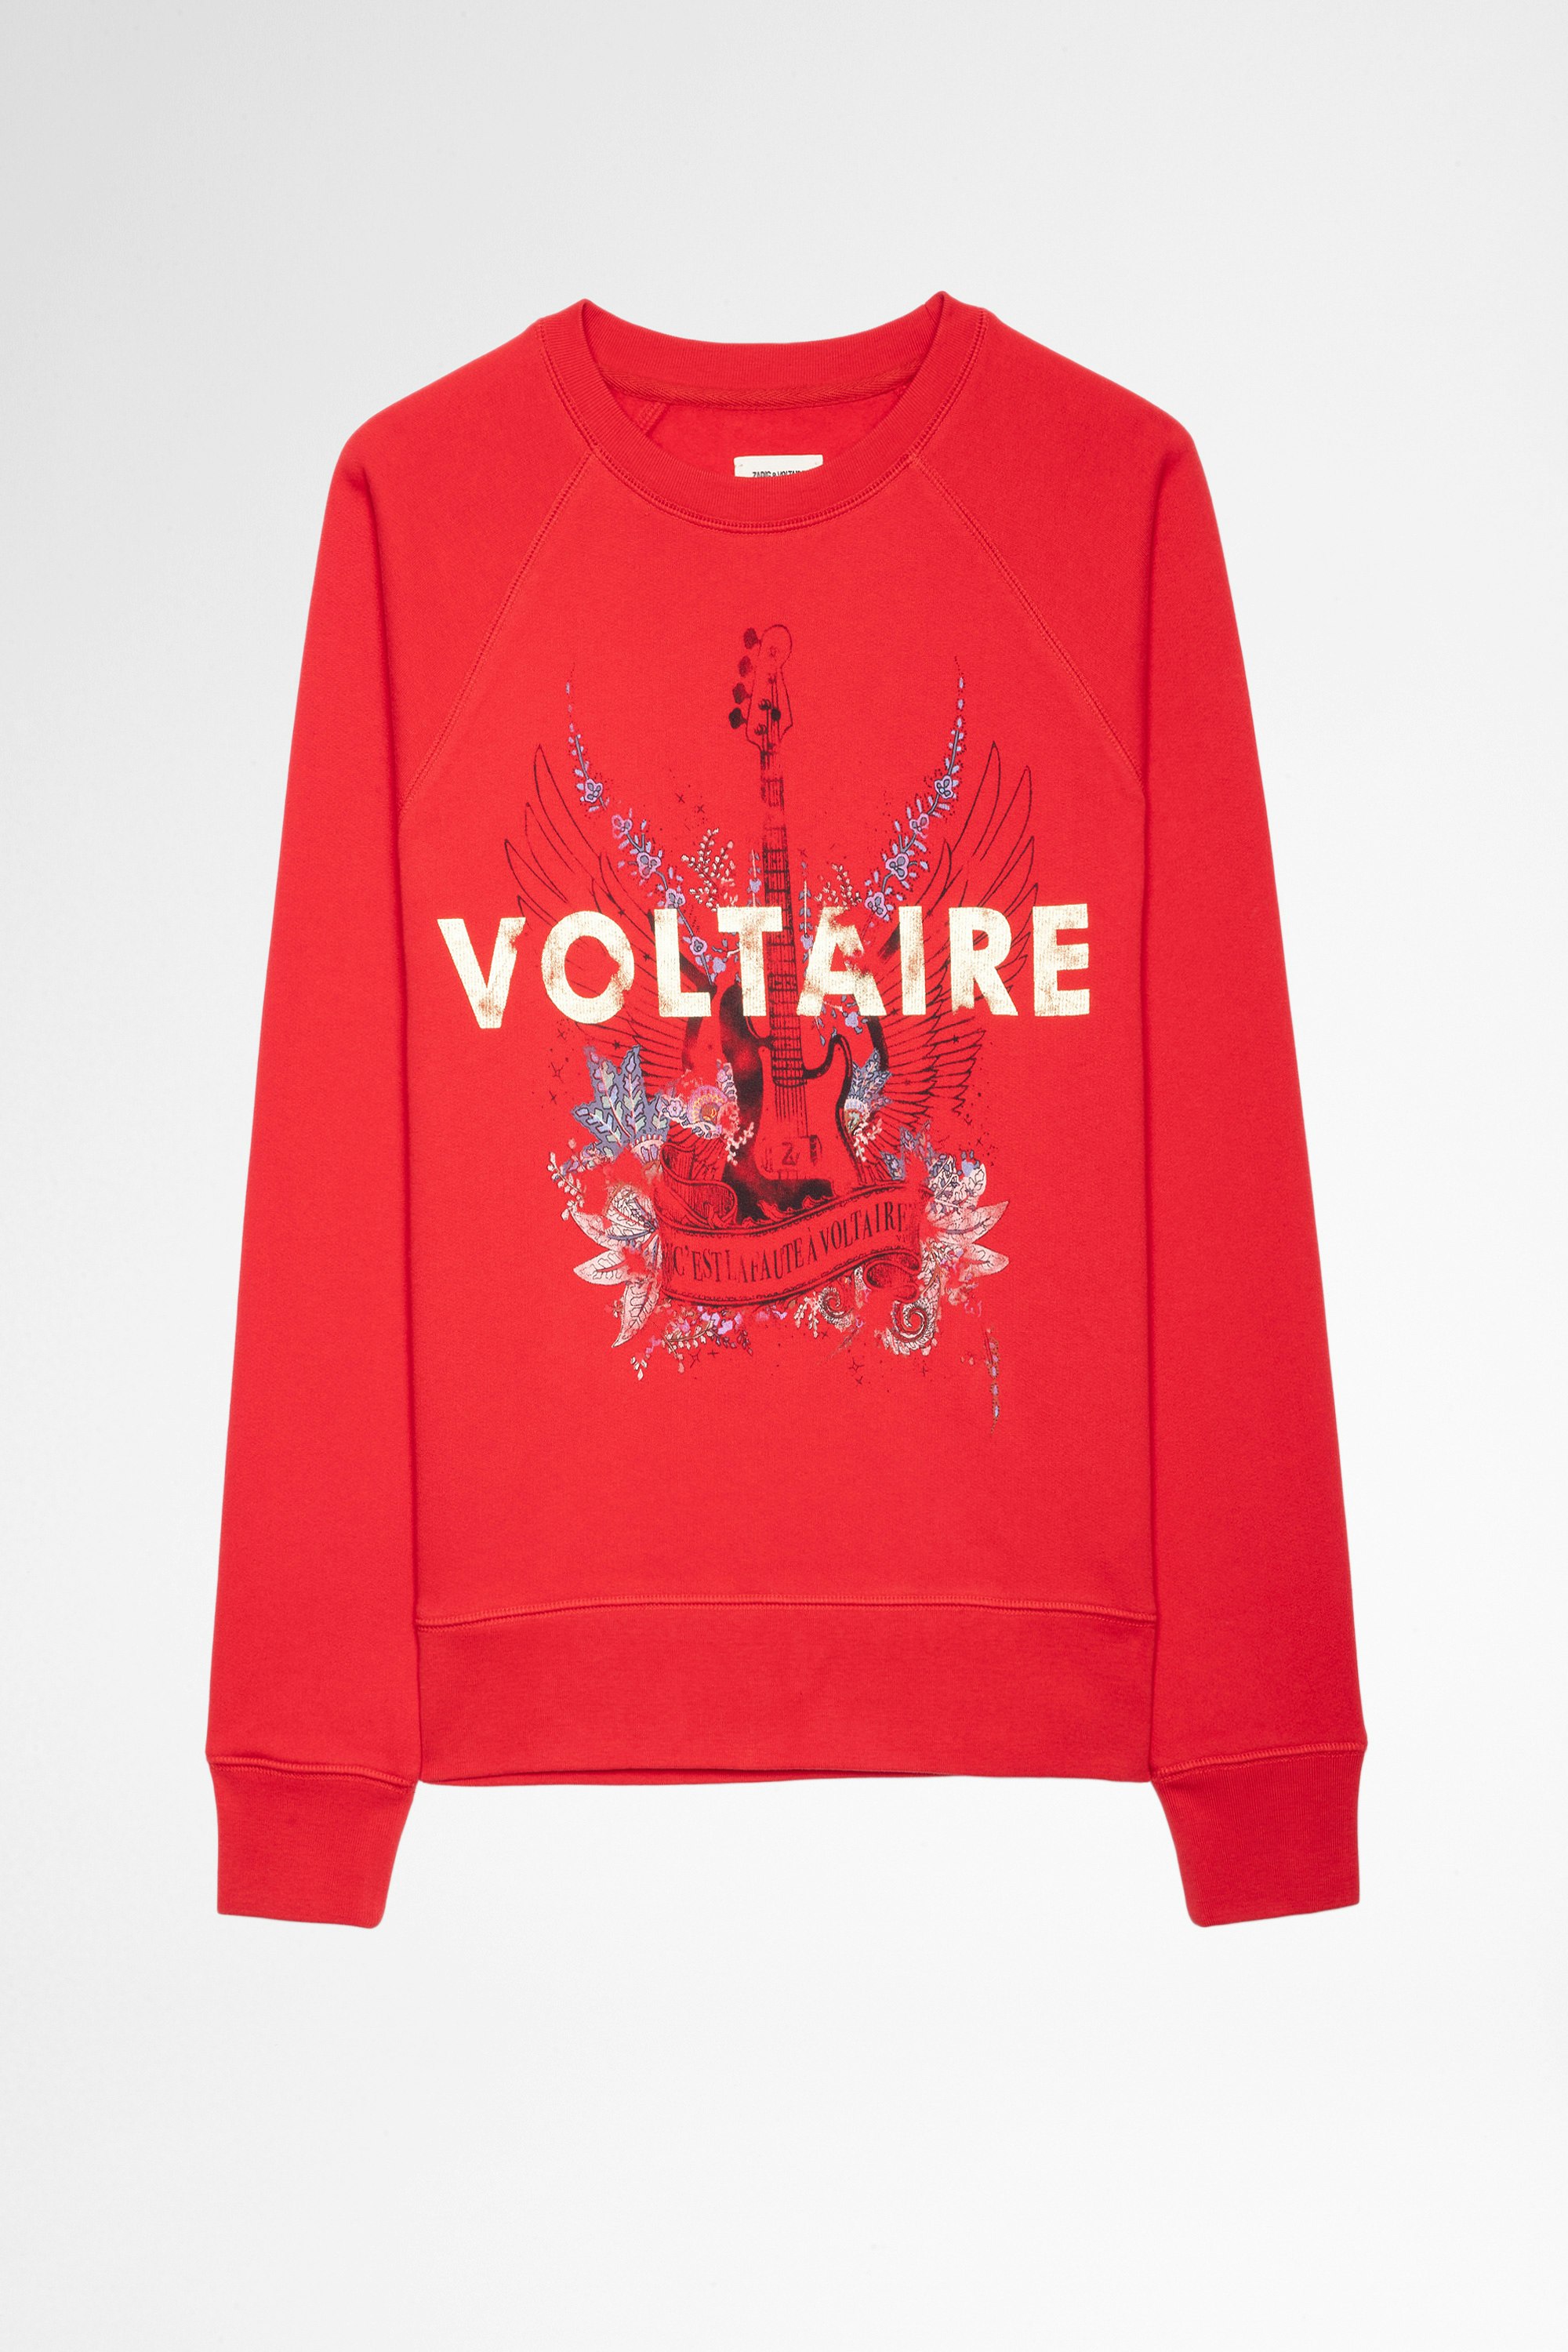 Sweatshirt Upper Guitar Voltaire Sweat imprimé Voltaire doré et guitare en coton rouge Femme